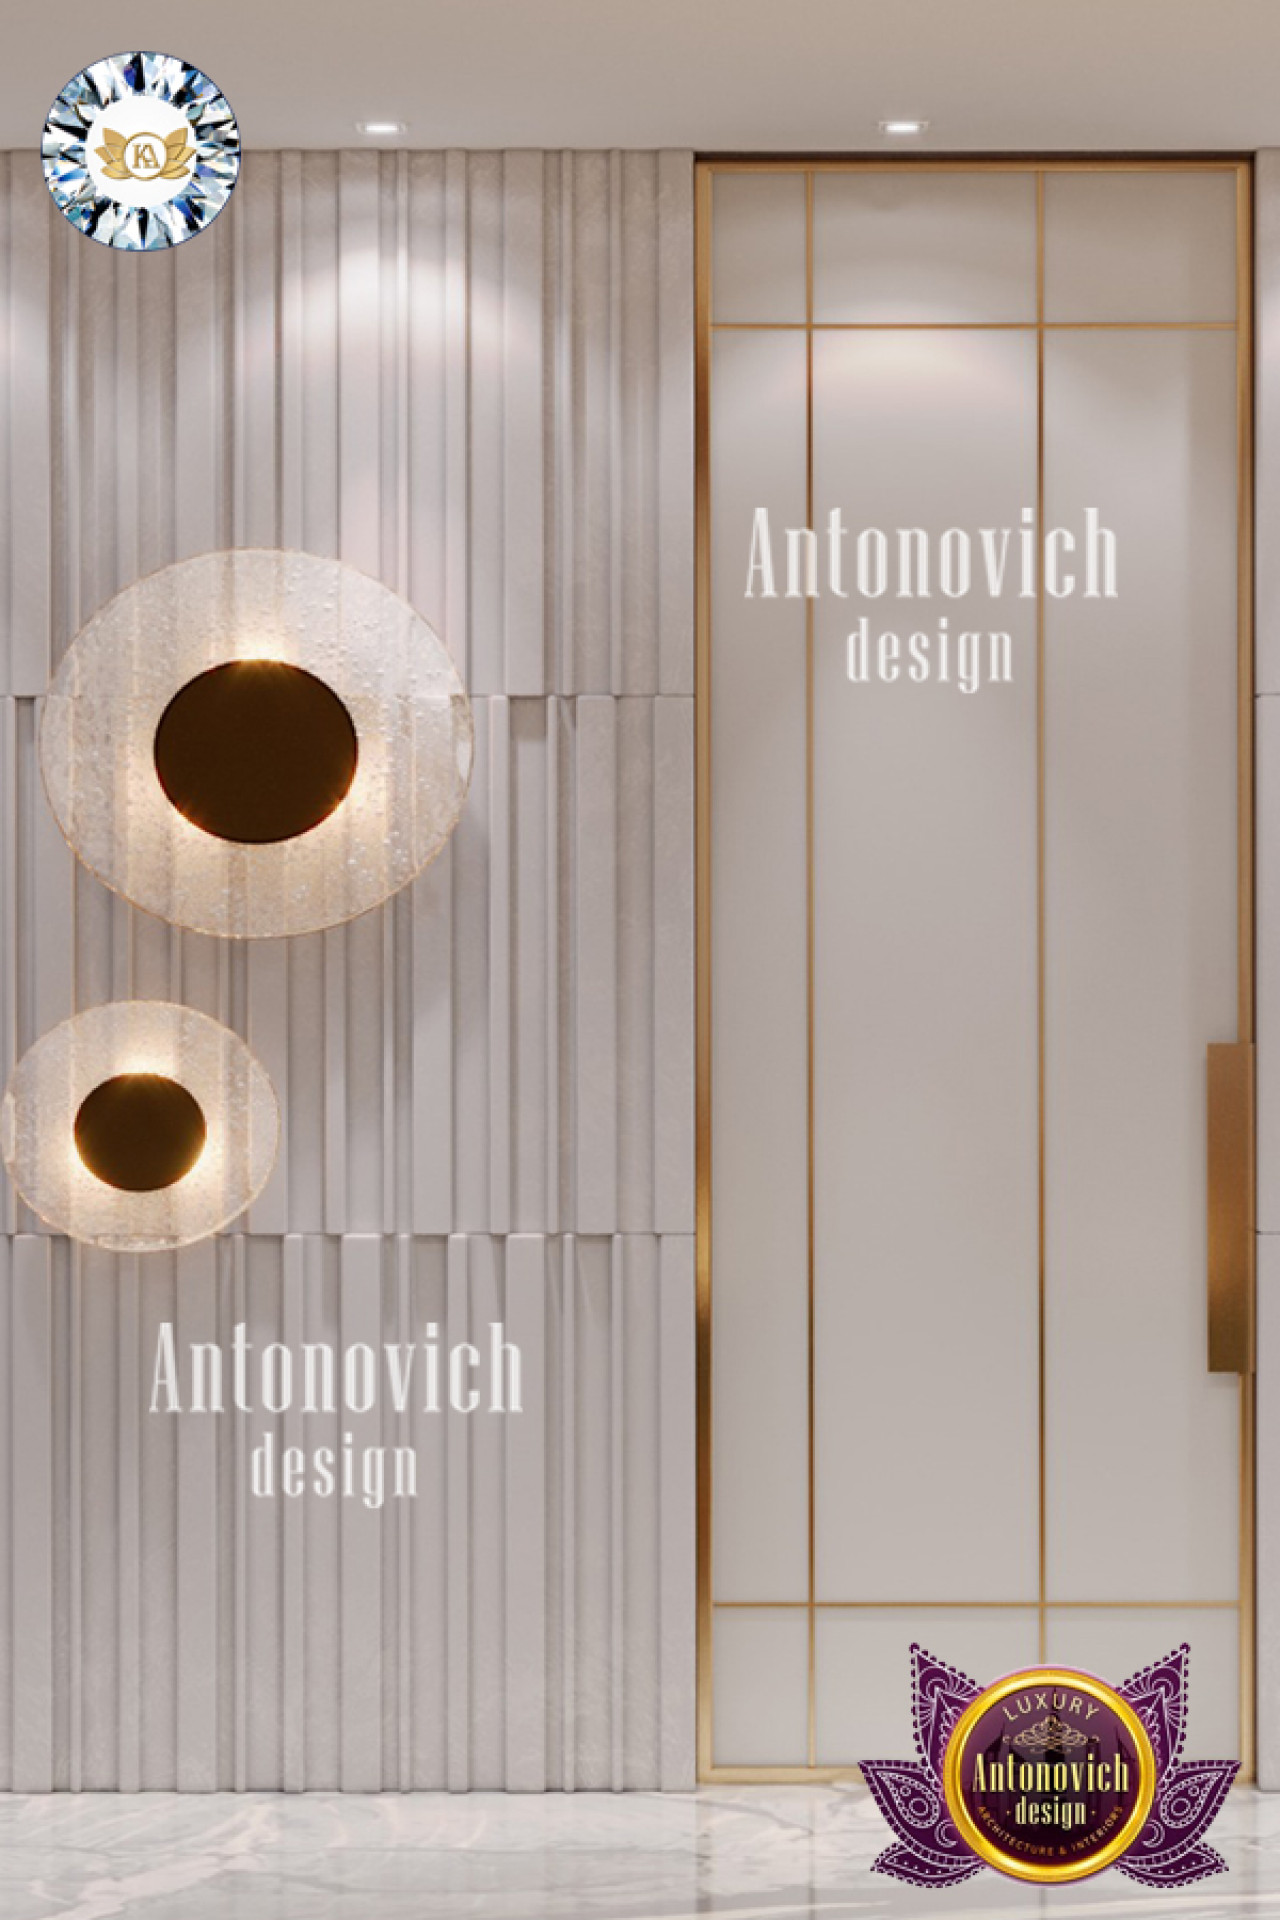 FANCY BATHROOM INTERIOR DESIGN BY LUXURY ANTONOVICH DESIGN